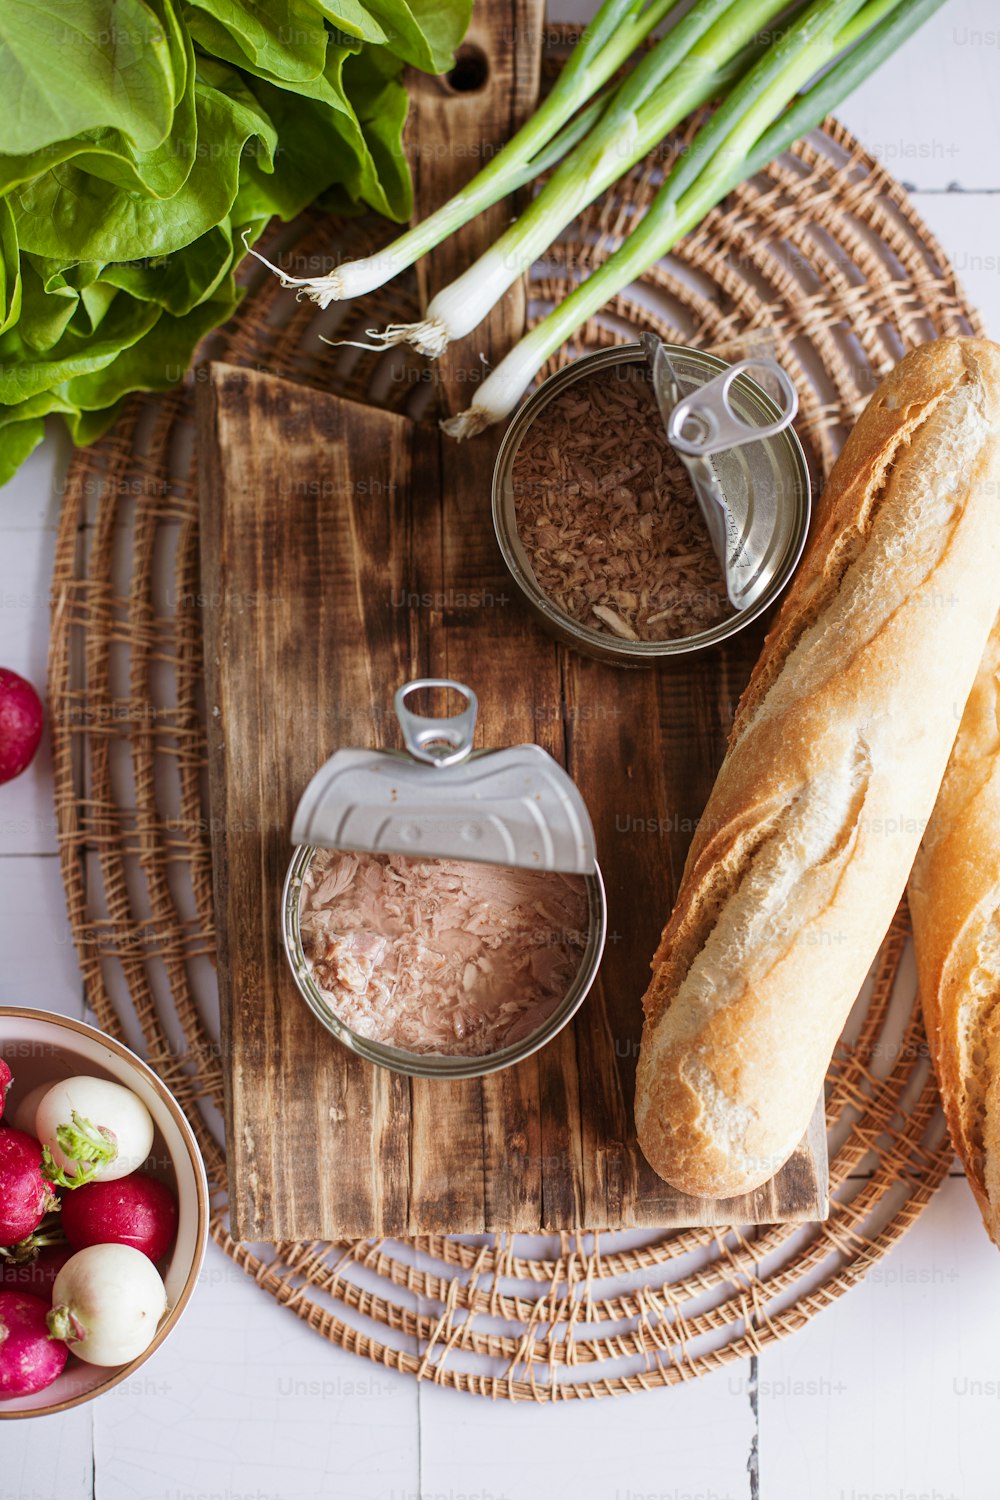 pão, rabanetes e outros ingredientes em uma bandeja de madeira